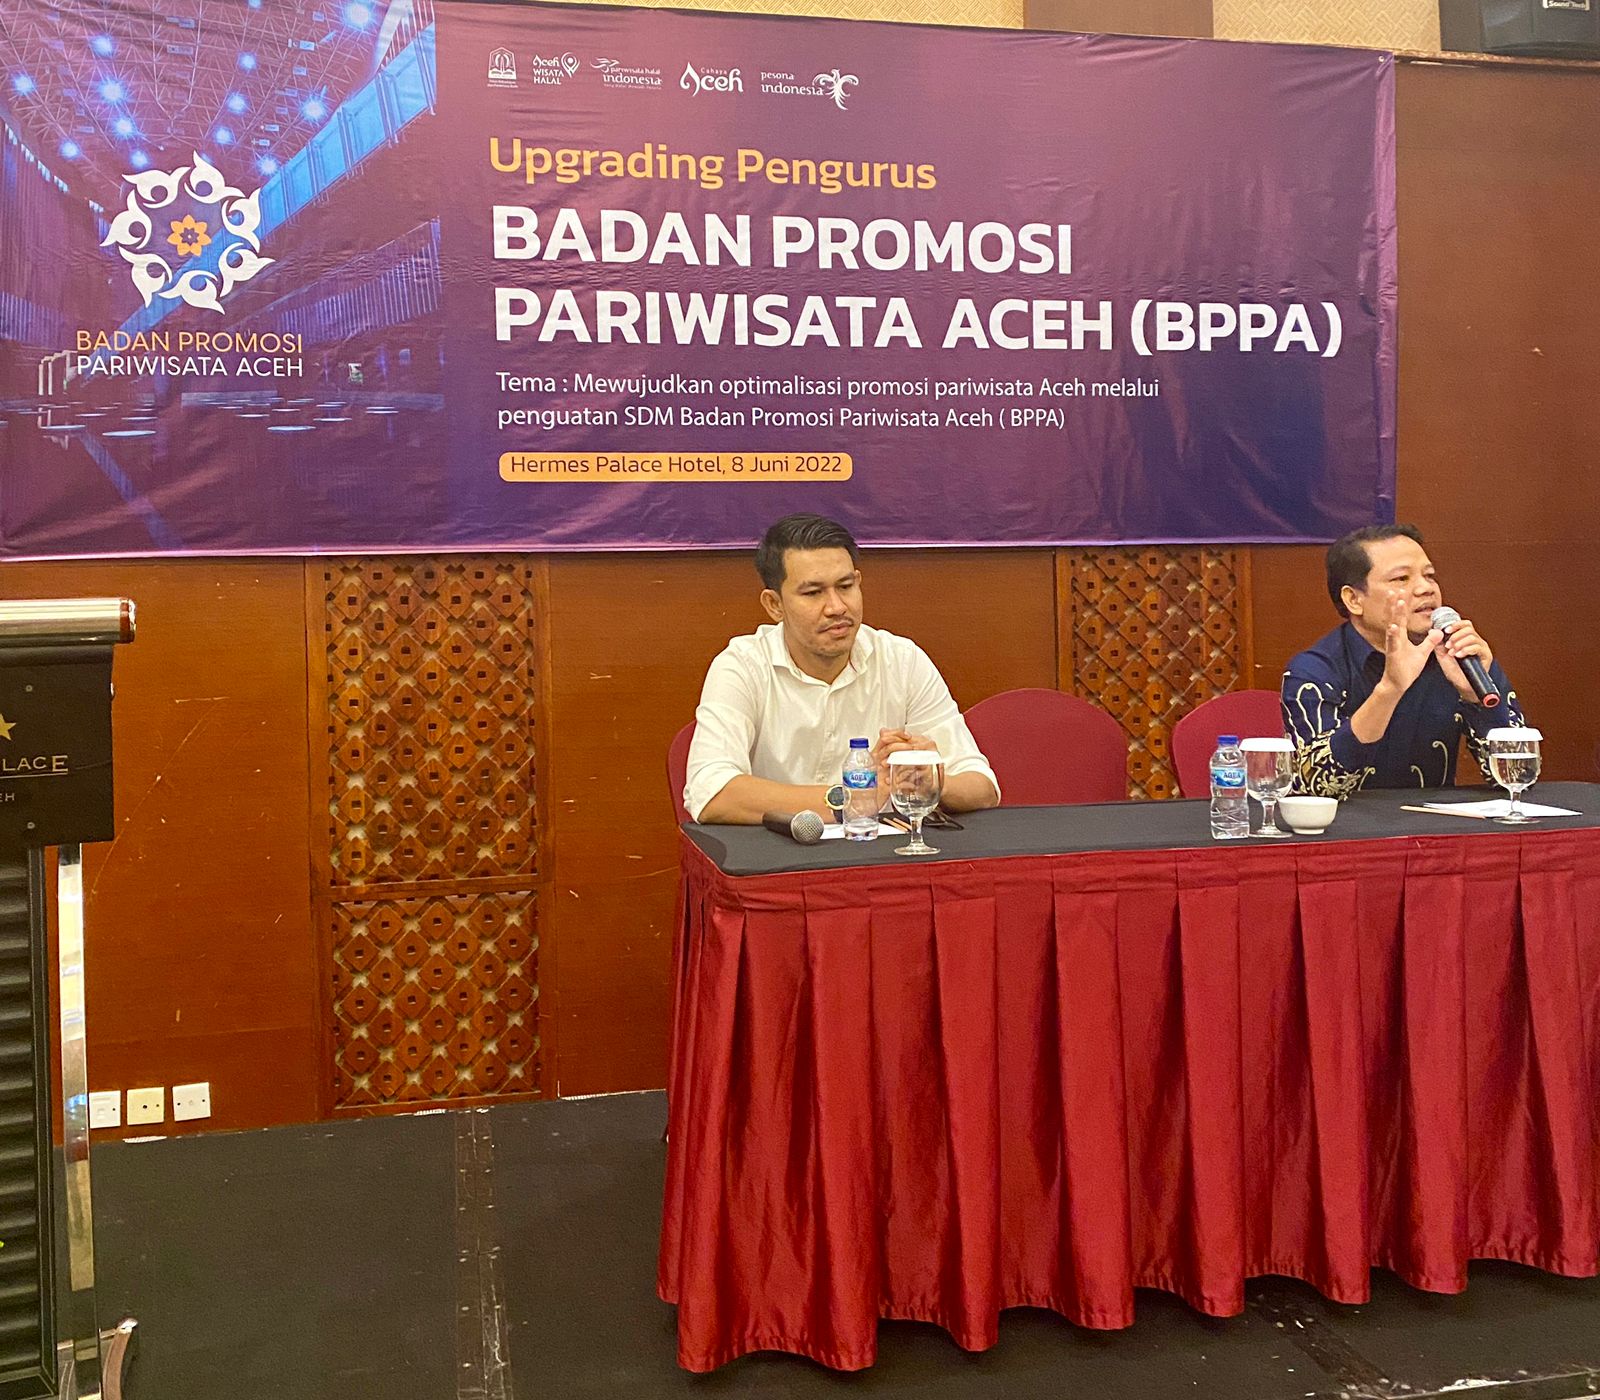 Badan Promosi Pariwisata Aceh Laksanakan Penguatan SDM Pengurus